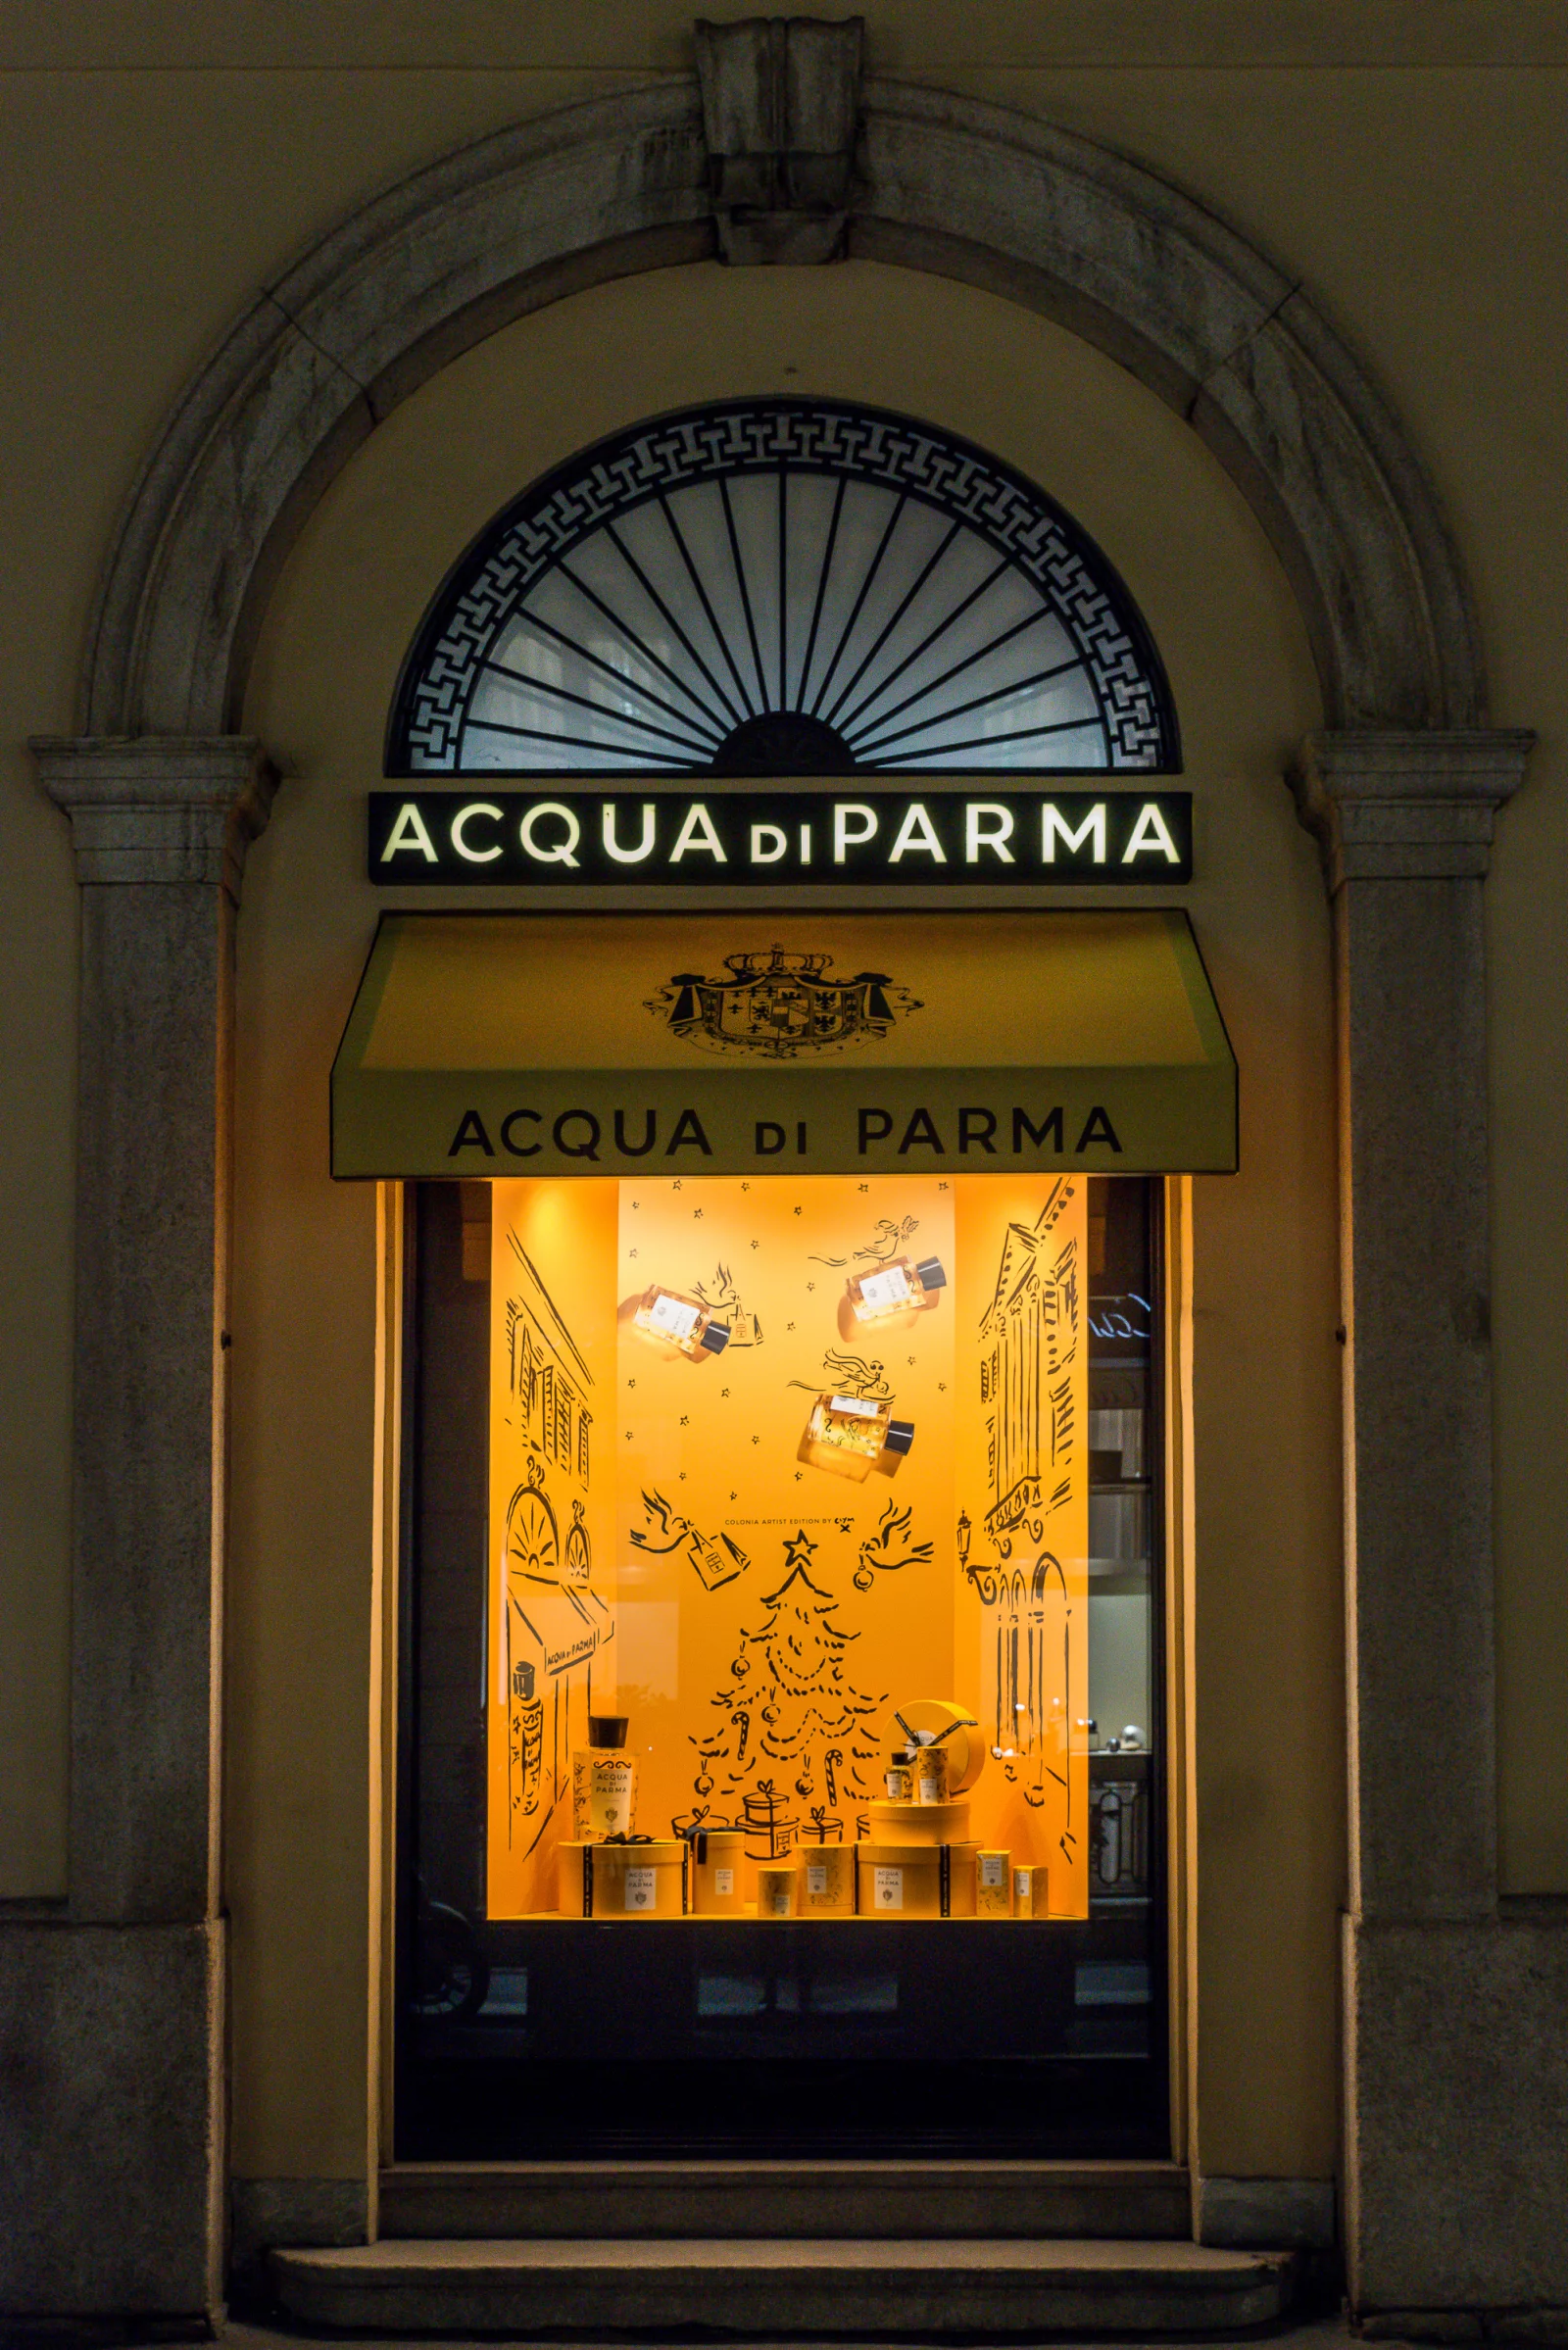 Acqua Di Parma 1 by Clym EVERNDEN